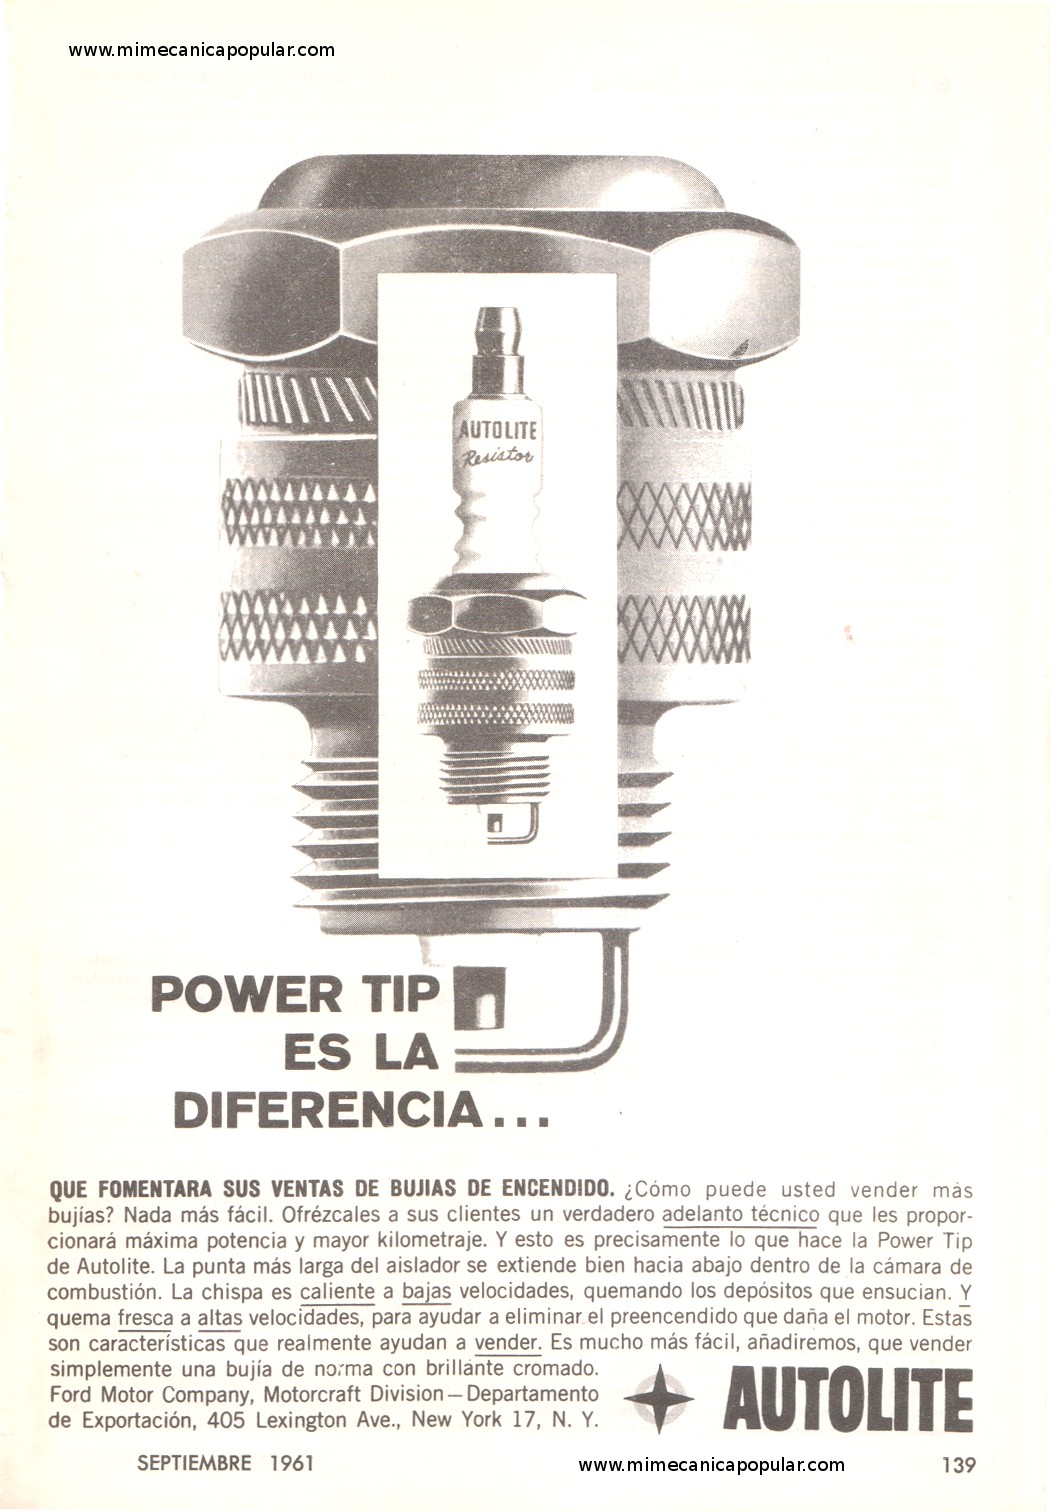 Publicidad - Bujías Autolite - Septiembre 1961